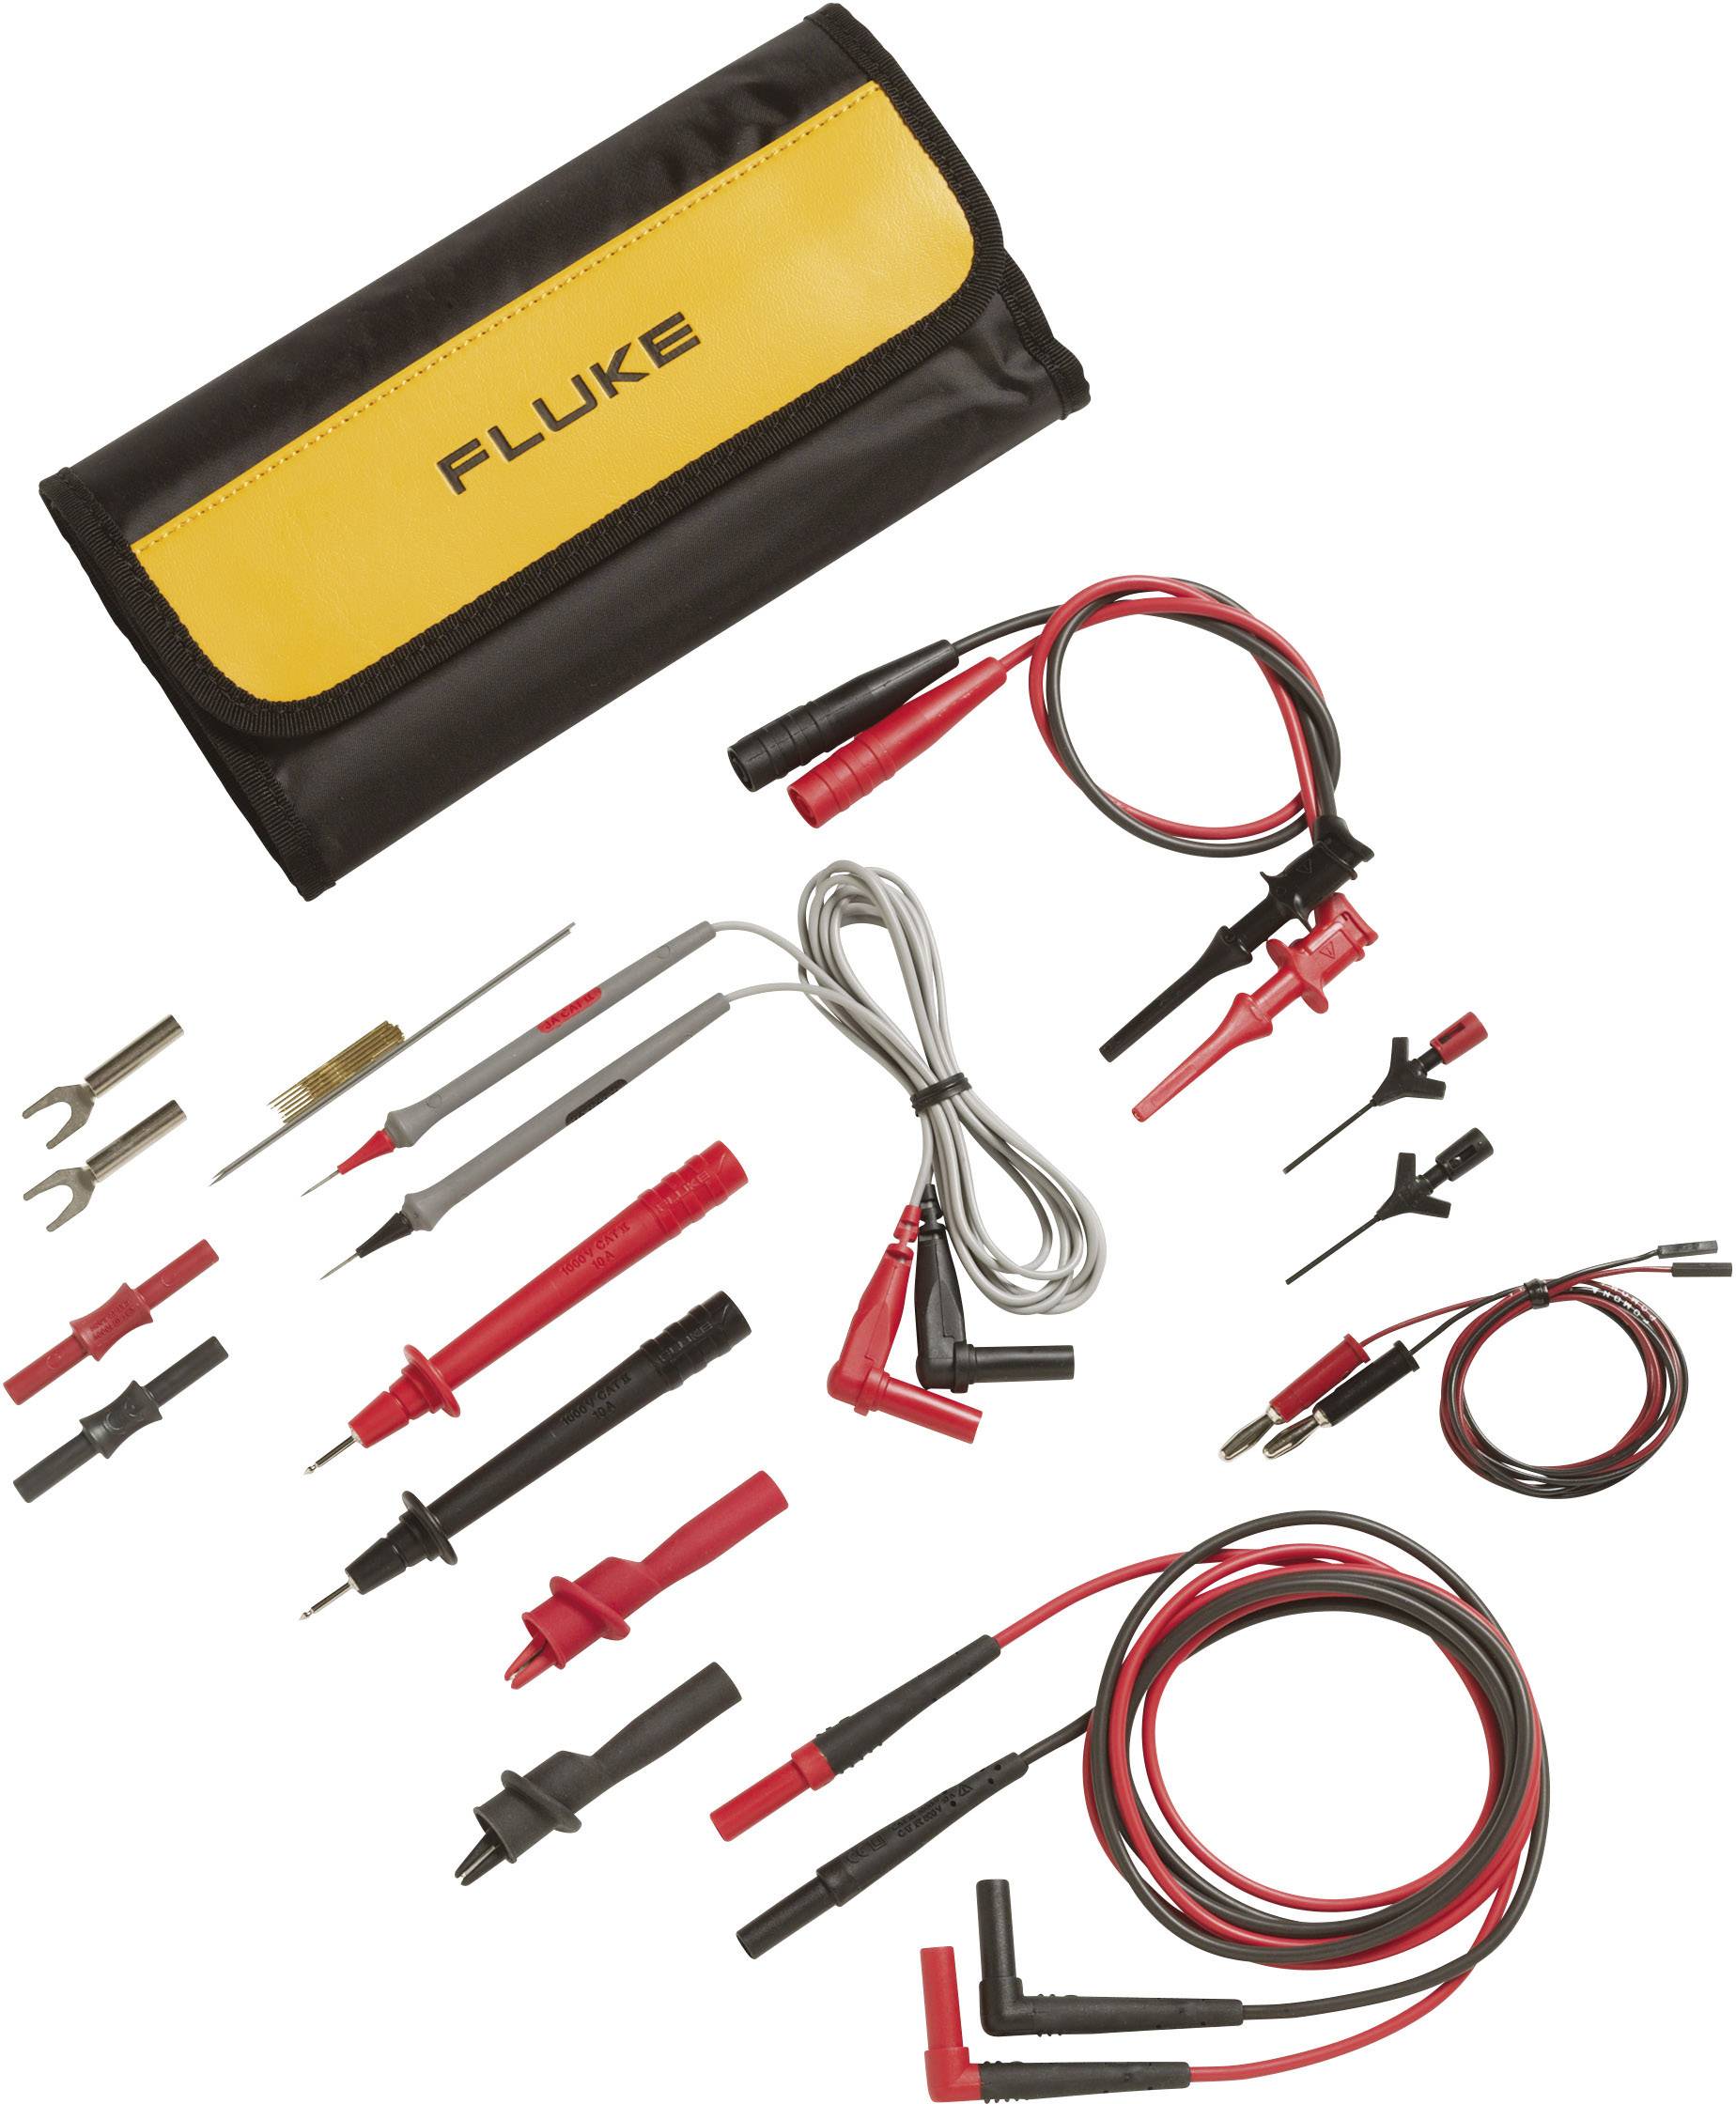 FLUKE Sicherheits-Messleitungs-Set [ Lamellenstecker 4 mm, Prüfspitze - Lamellenstecker 4 mm] Rot, S